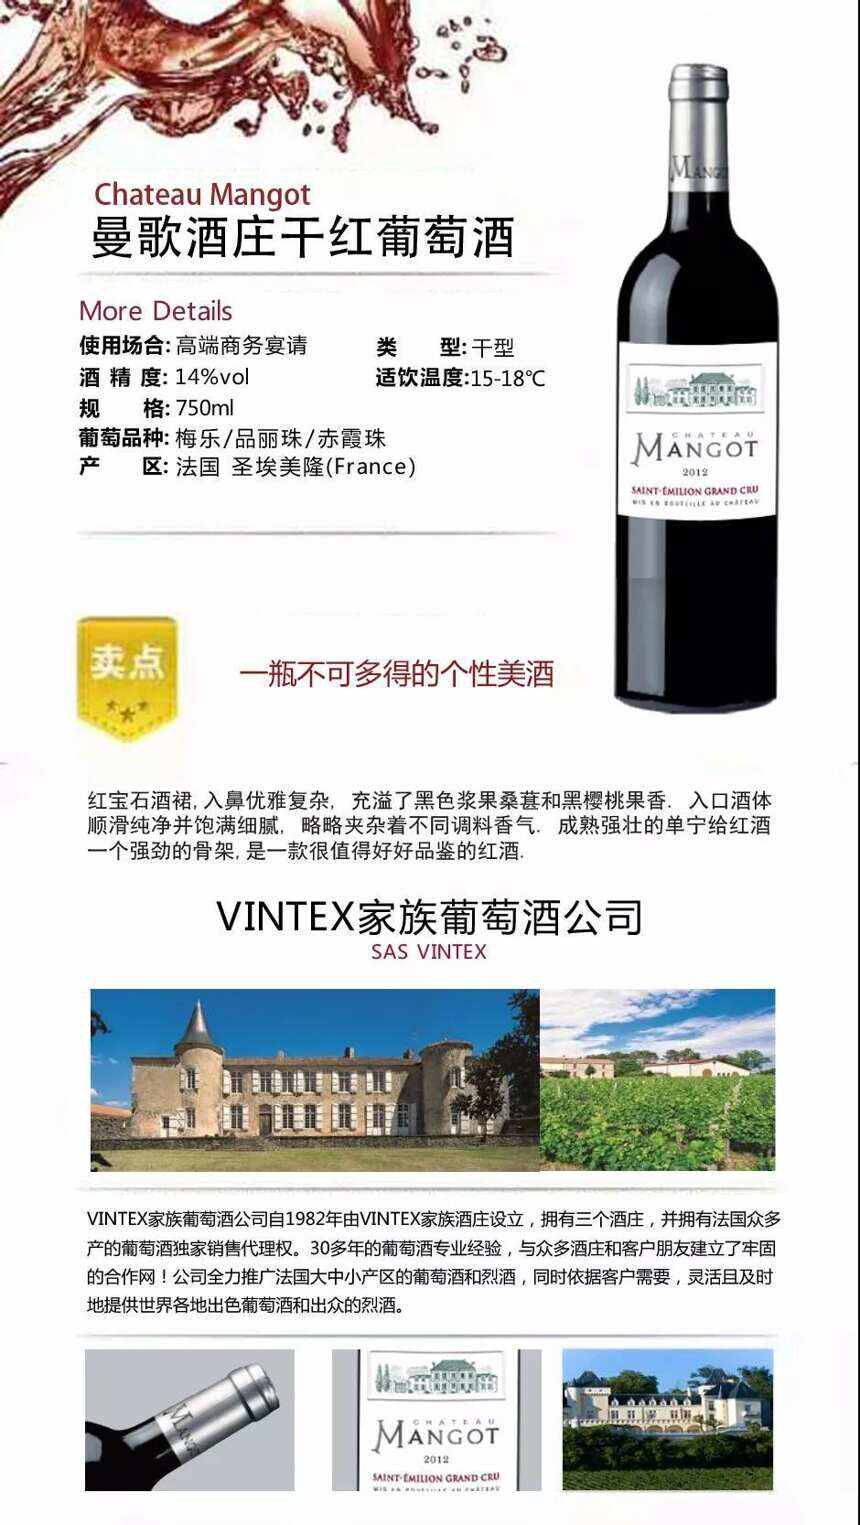 法国VLVG家族葡萄酒公司 用魅力和品质为自己代言